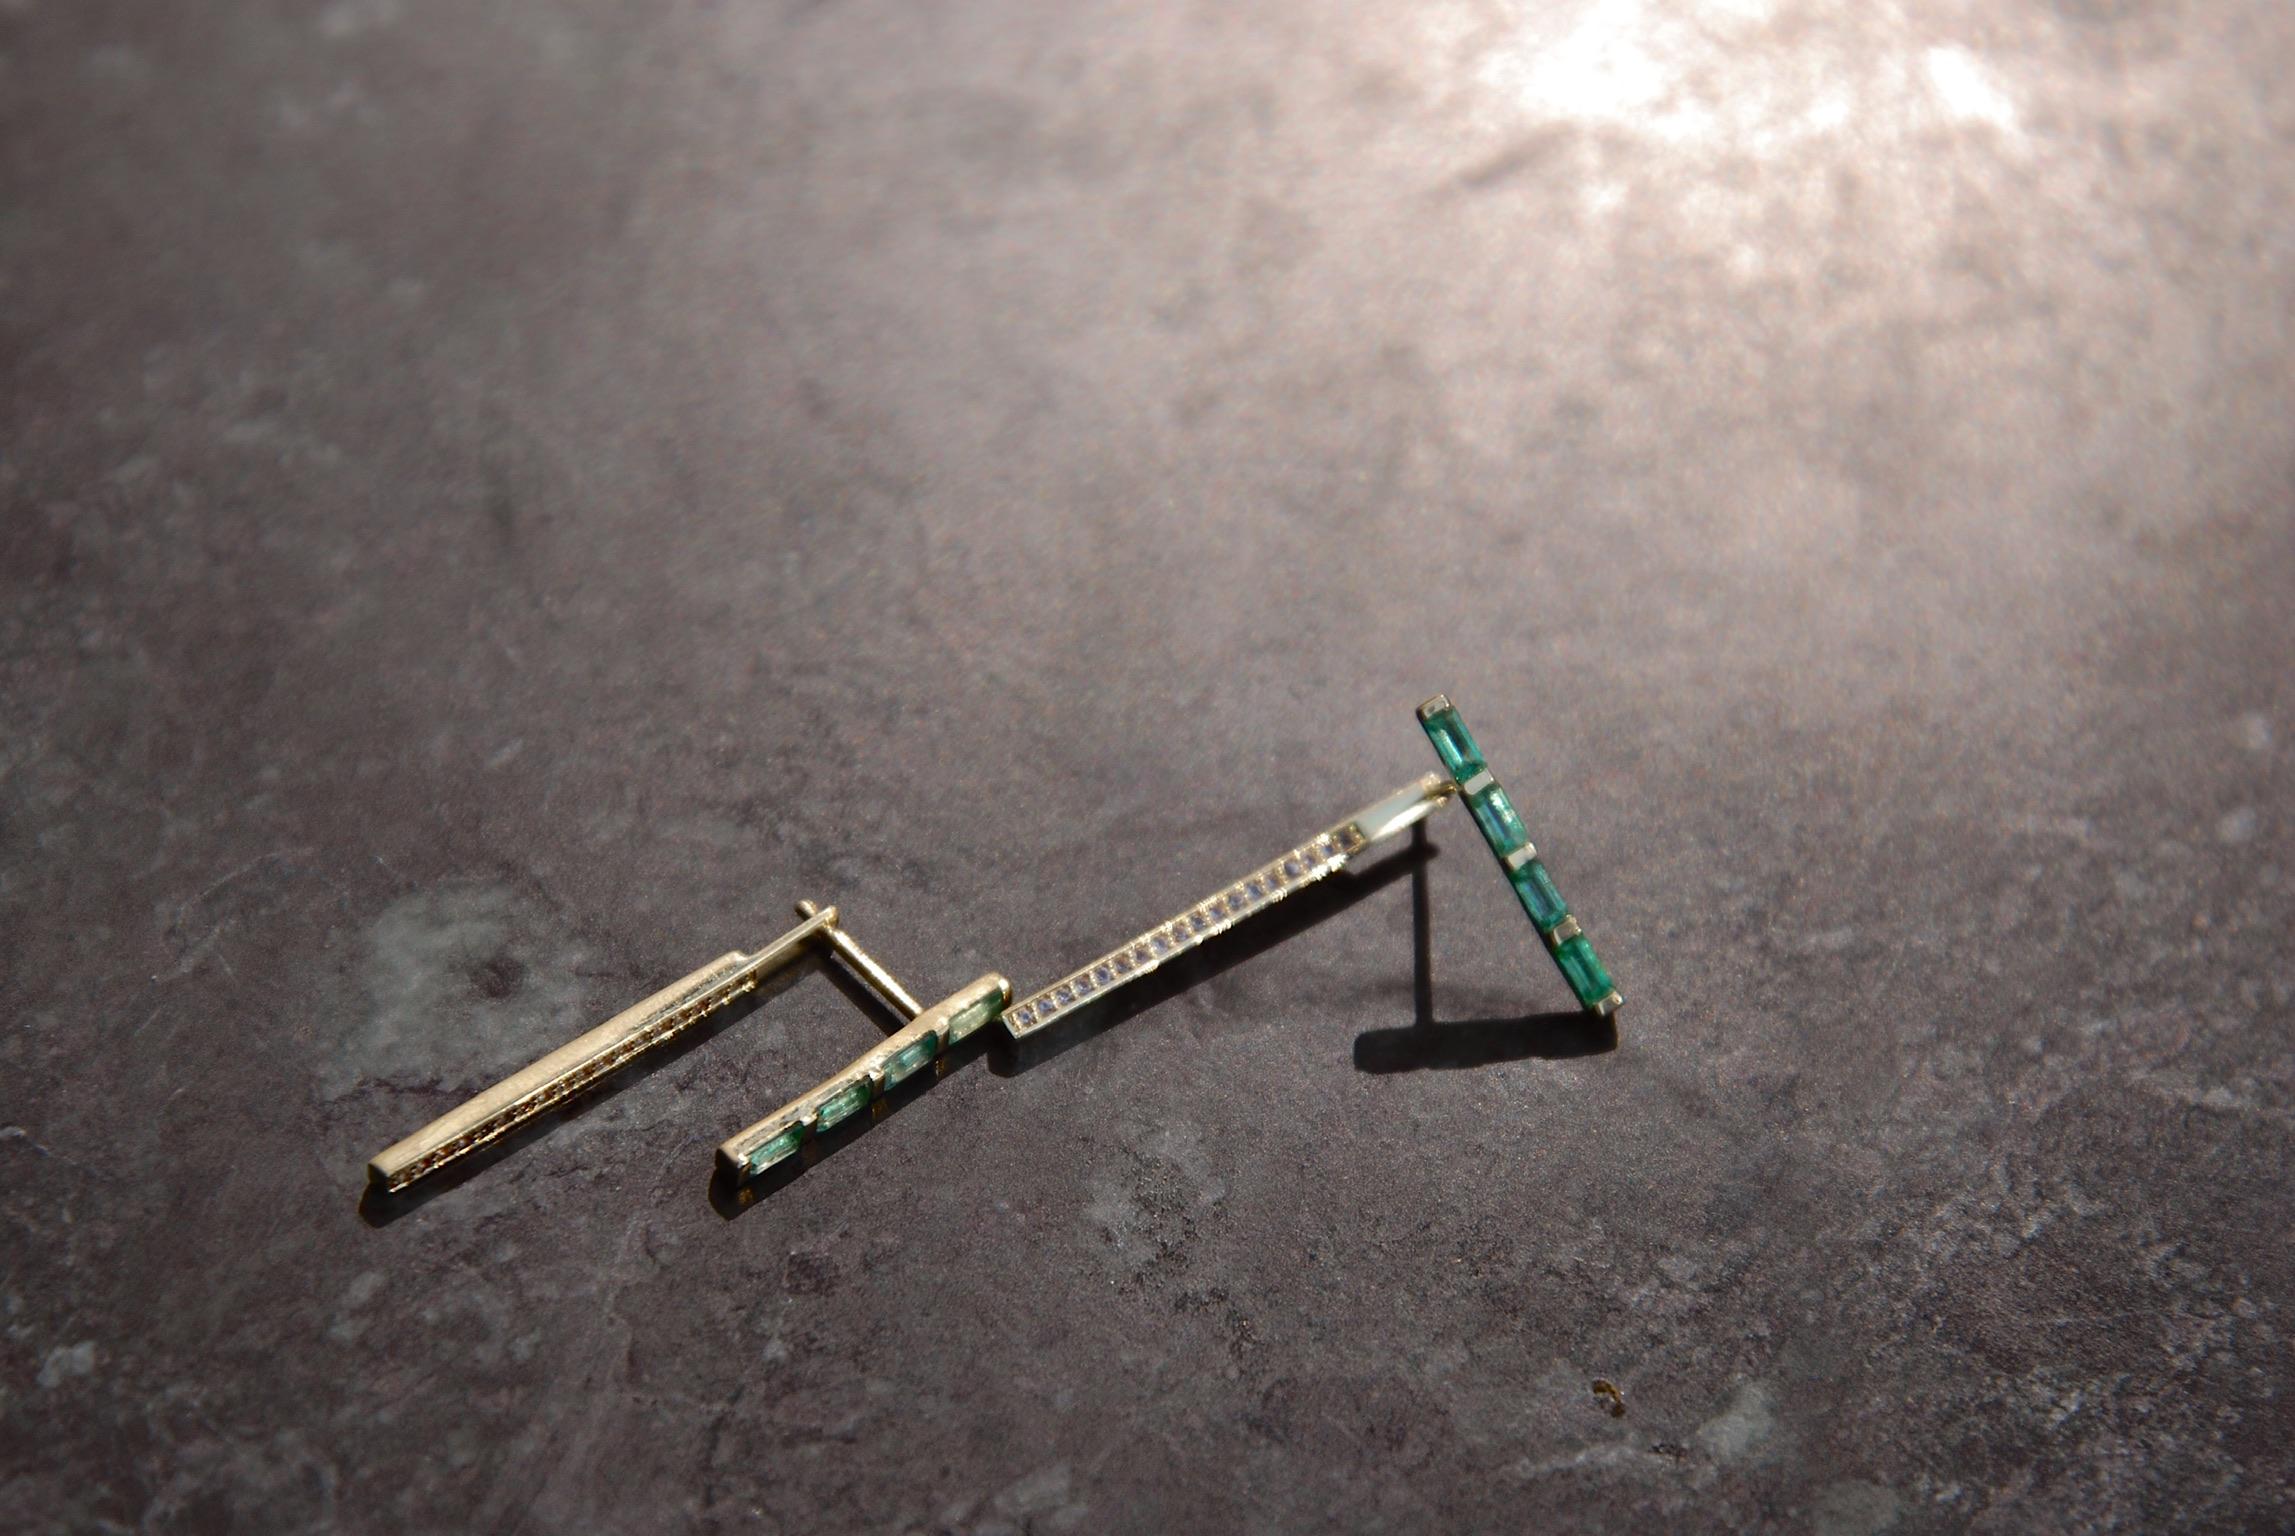 Unsere Limelight Emerald Earrings sind das perfekte Set für sich allein, können aber auch mit unseren Infinity Earrings kombiniert werden, um einen gewagteren Look zu erzielen. Dieses Set ist mit auffälligen grünen Smaragden verziert und wertet